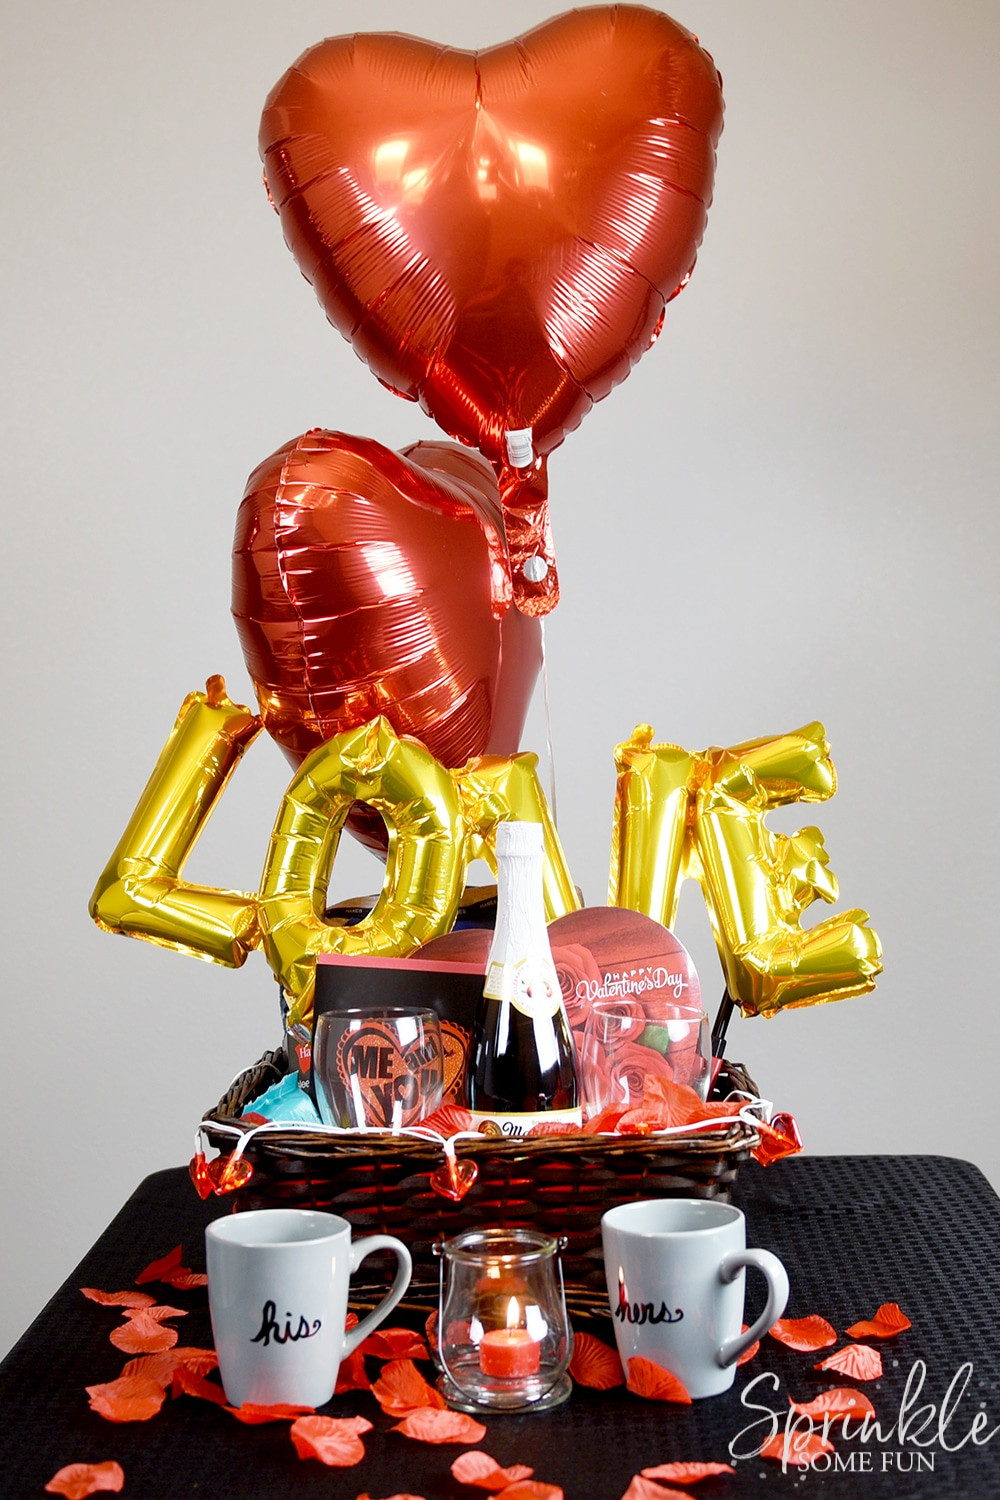 Valentine Gift Baskets Ideas
 Romantic Valentine Gift Basket Ideas ⋆ Sprinkle Some Fun